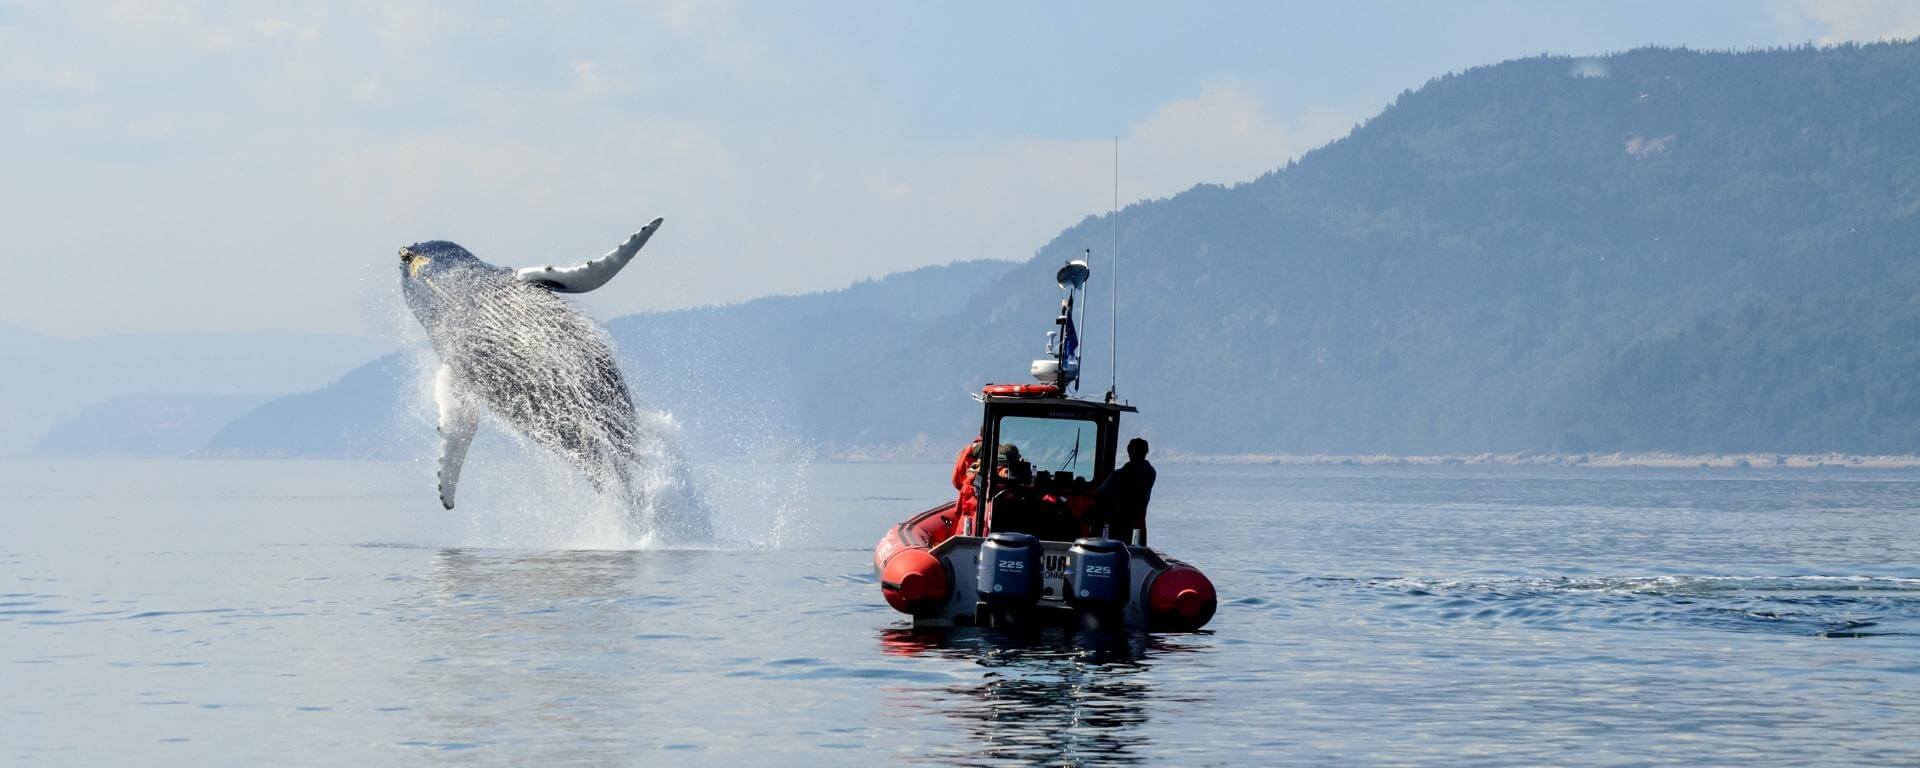 Quebec: Wilderness & Whales